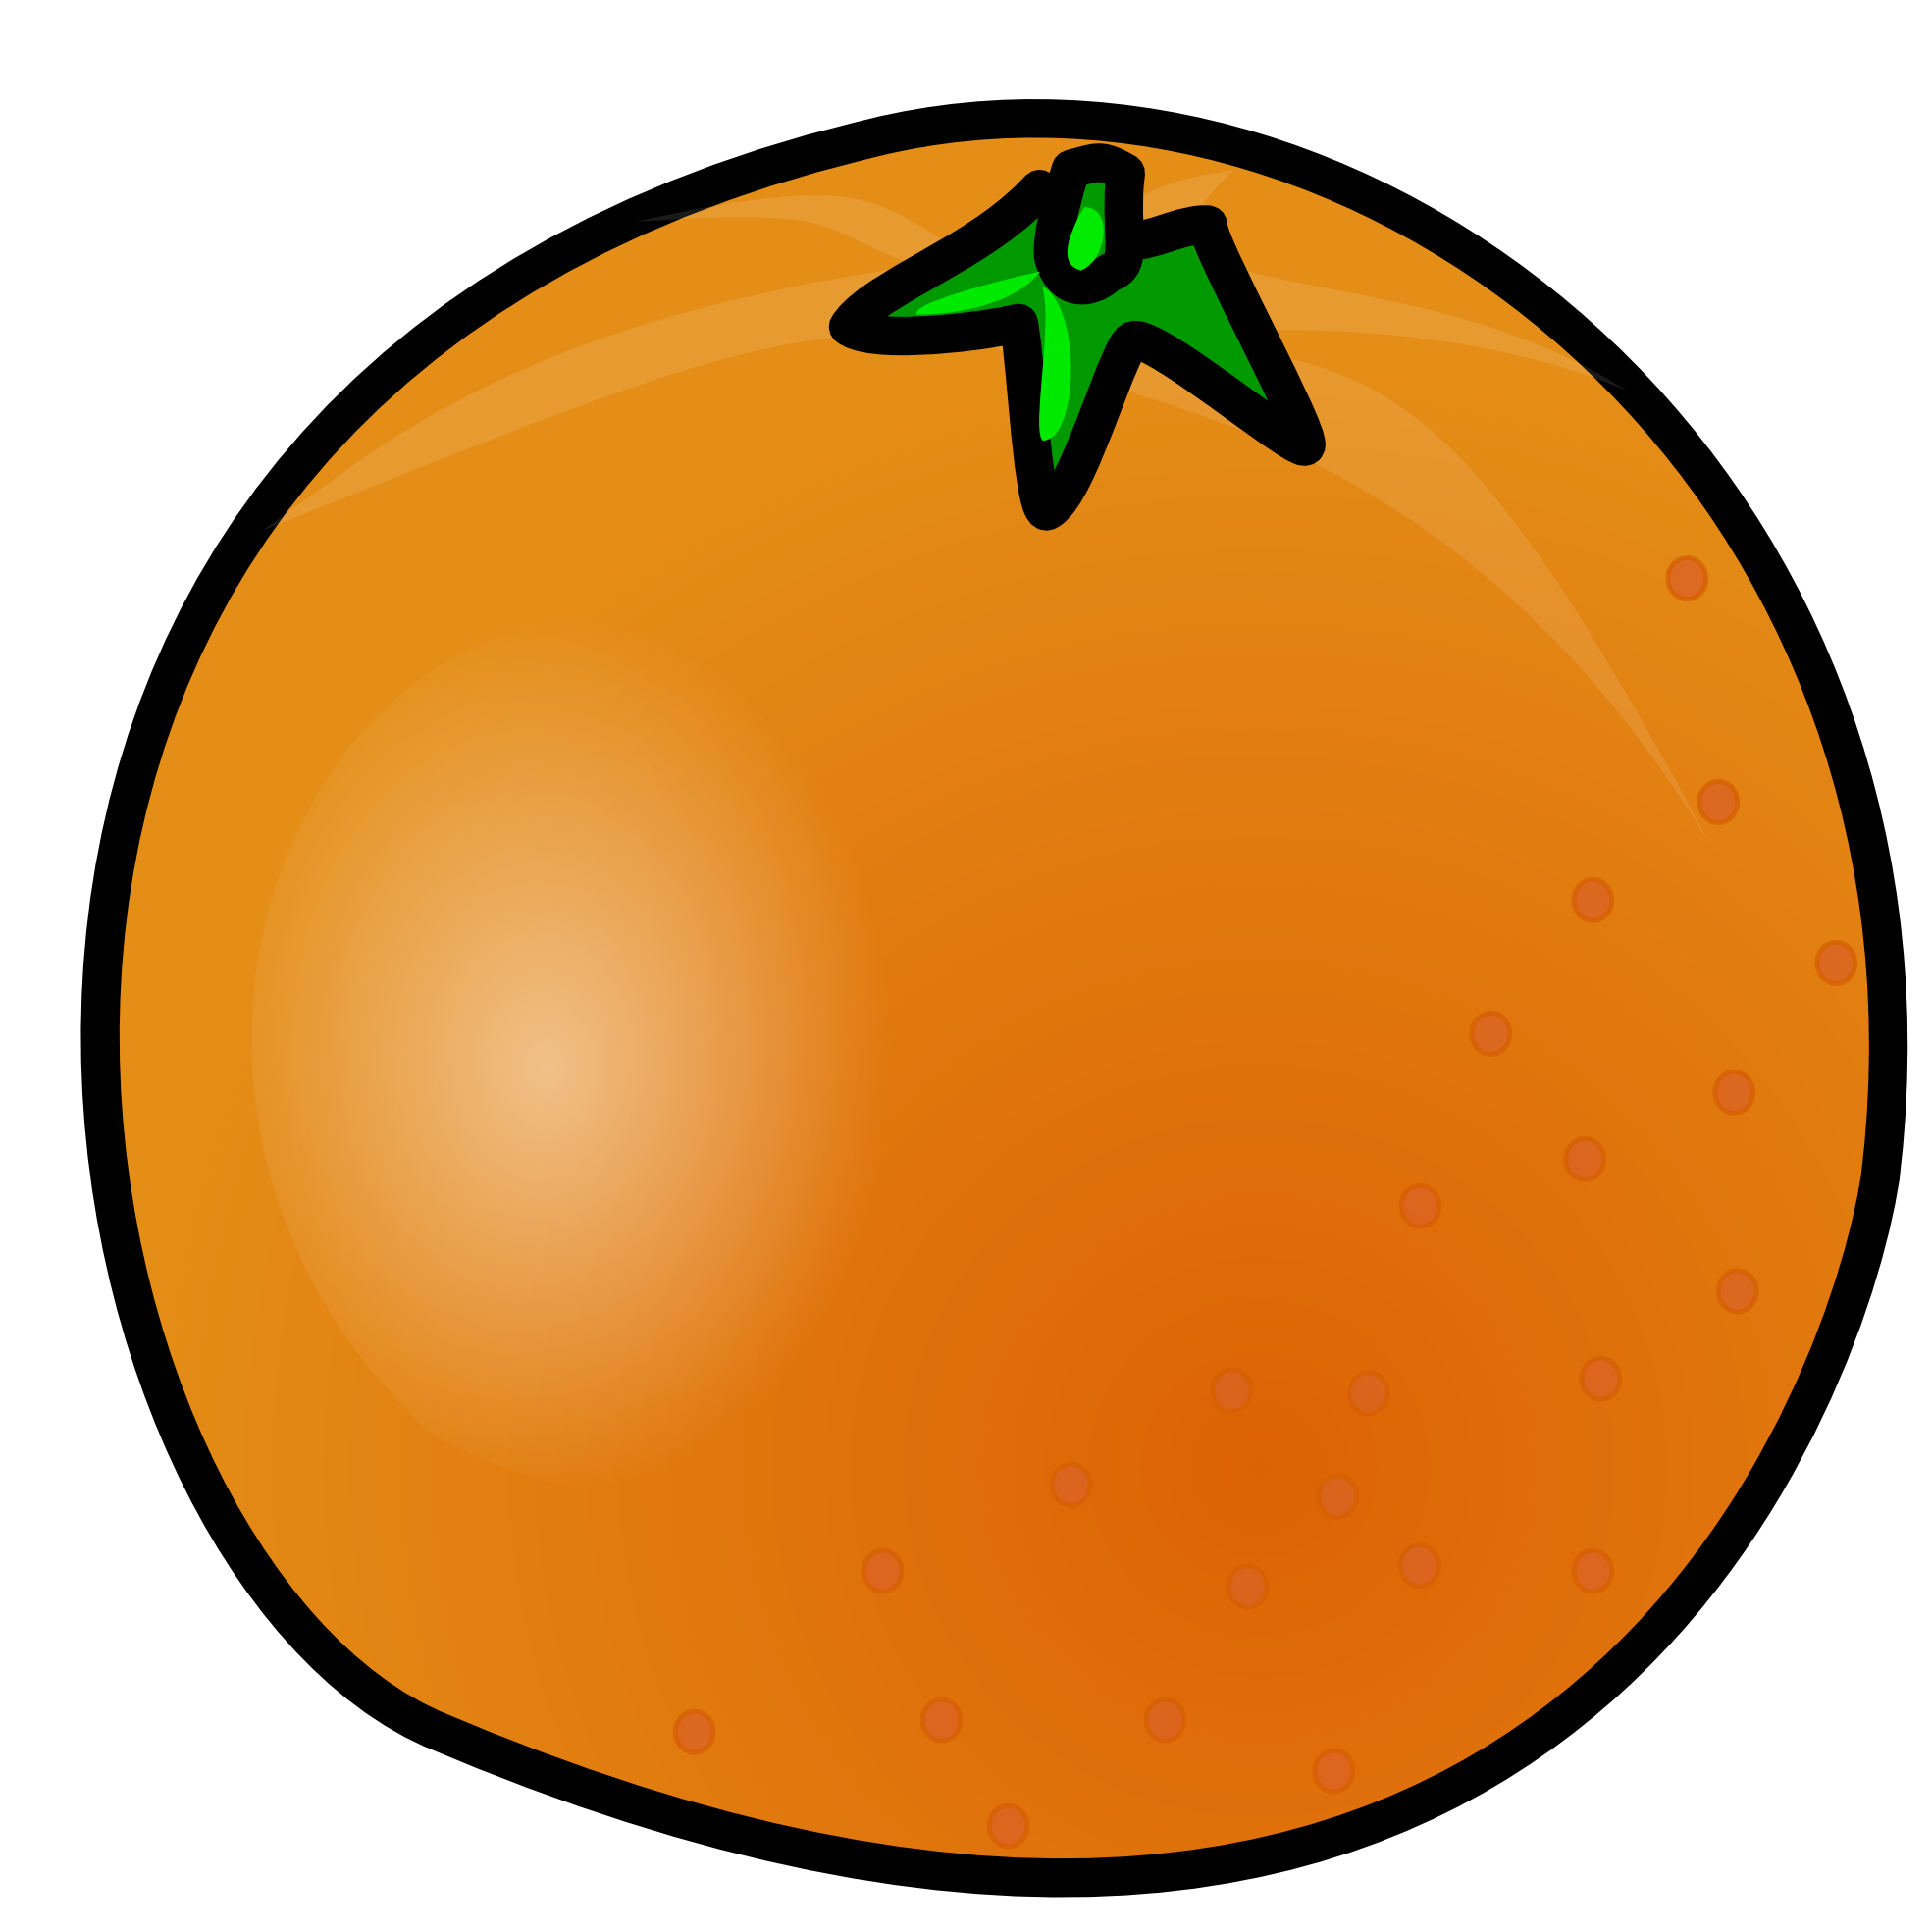 Orange PNG image, free .